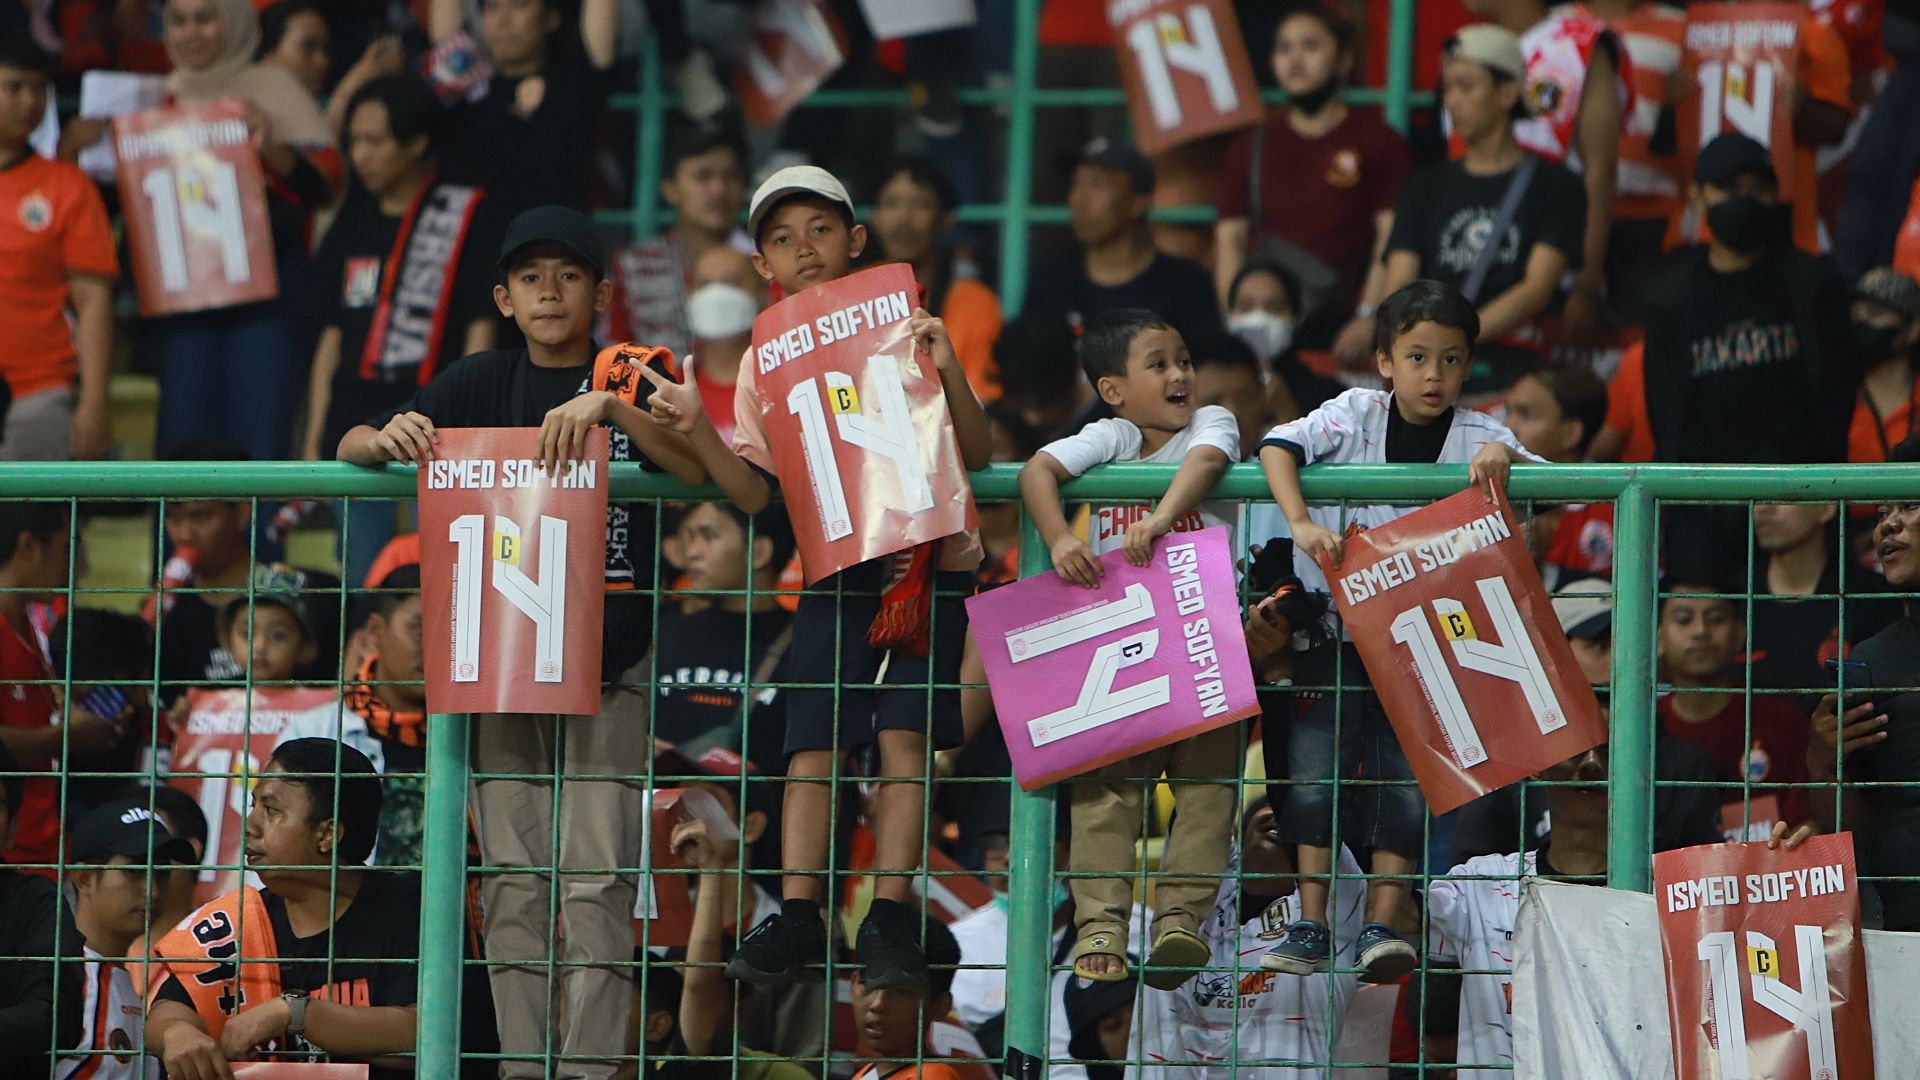 Empat suporter cilik memamerkan poster nomor punggung Ismed Sofyan saat Persija menjamu Madura United pada pekan ke-10 Liga 1 2022-2023 di Stadion Patriot Candrabagha, Bekasi, 17 September 2022.